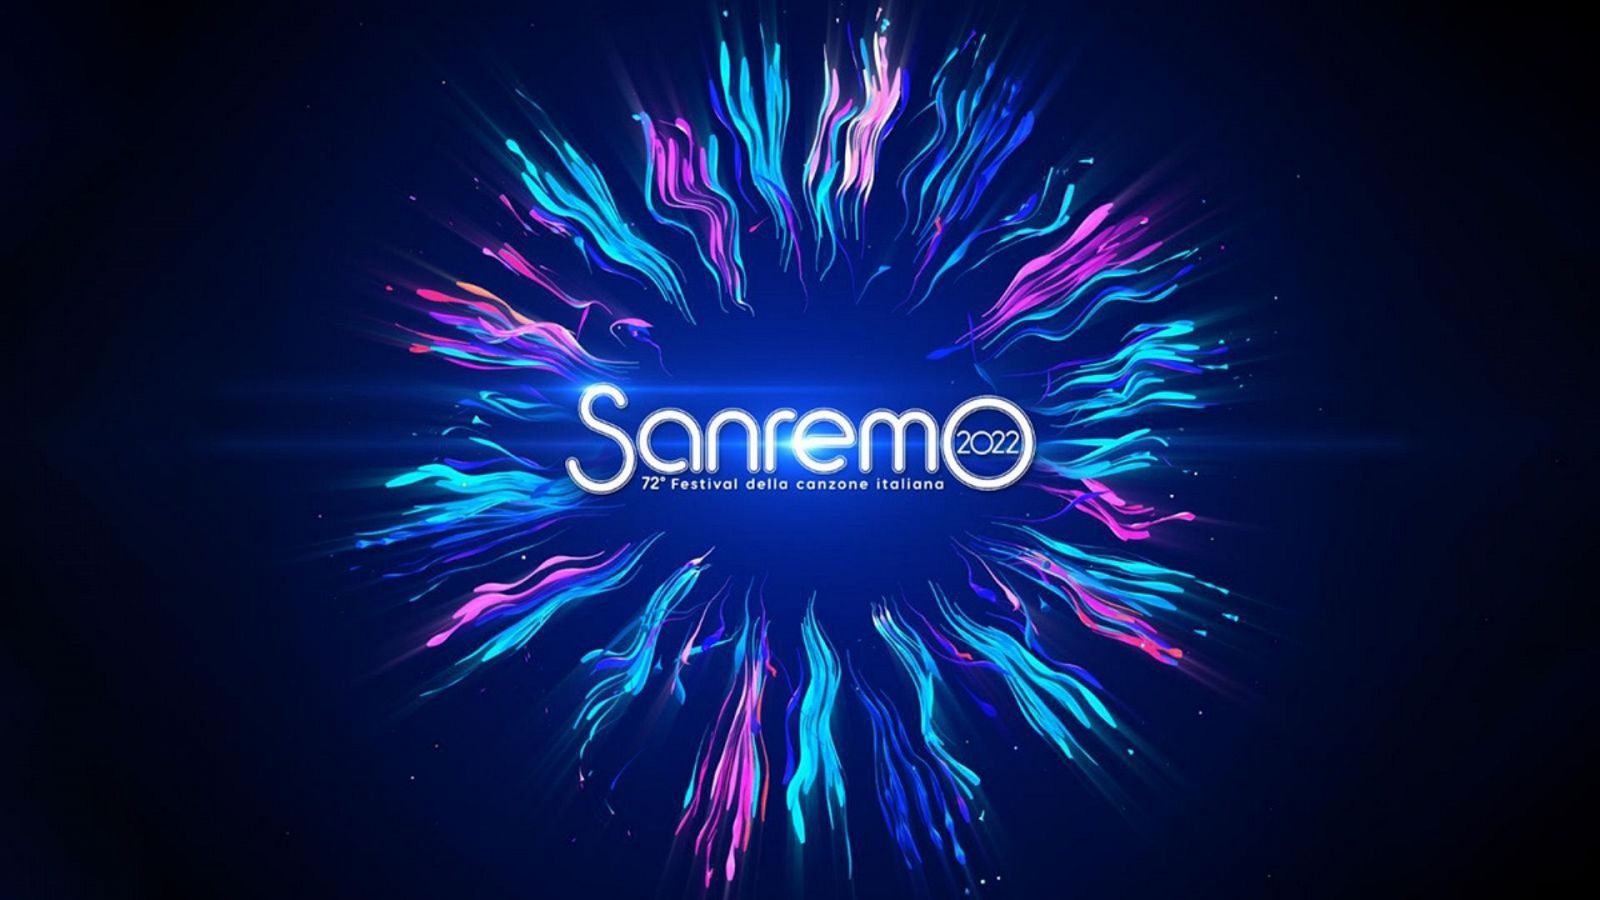 Festival de la Canción de San Remo 2022